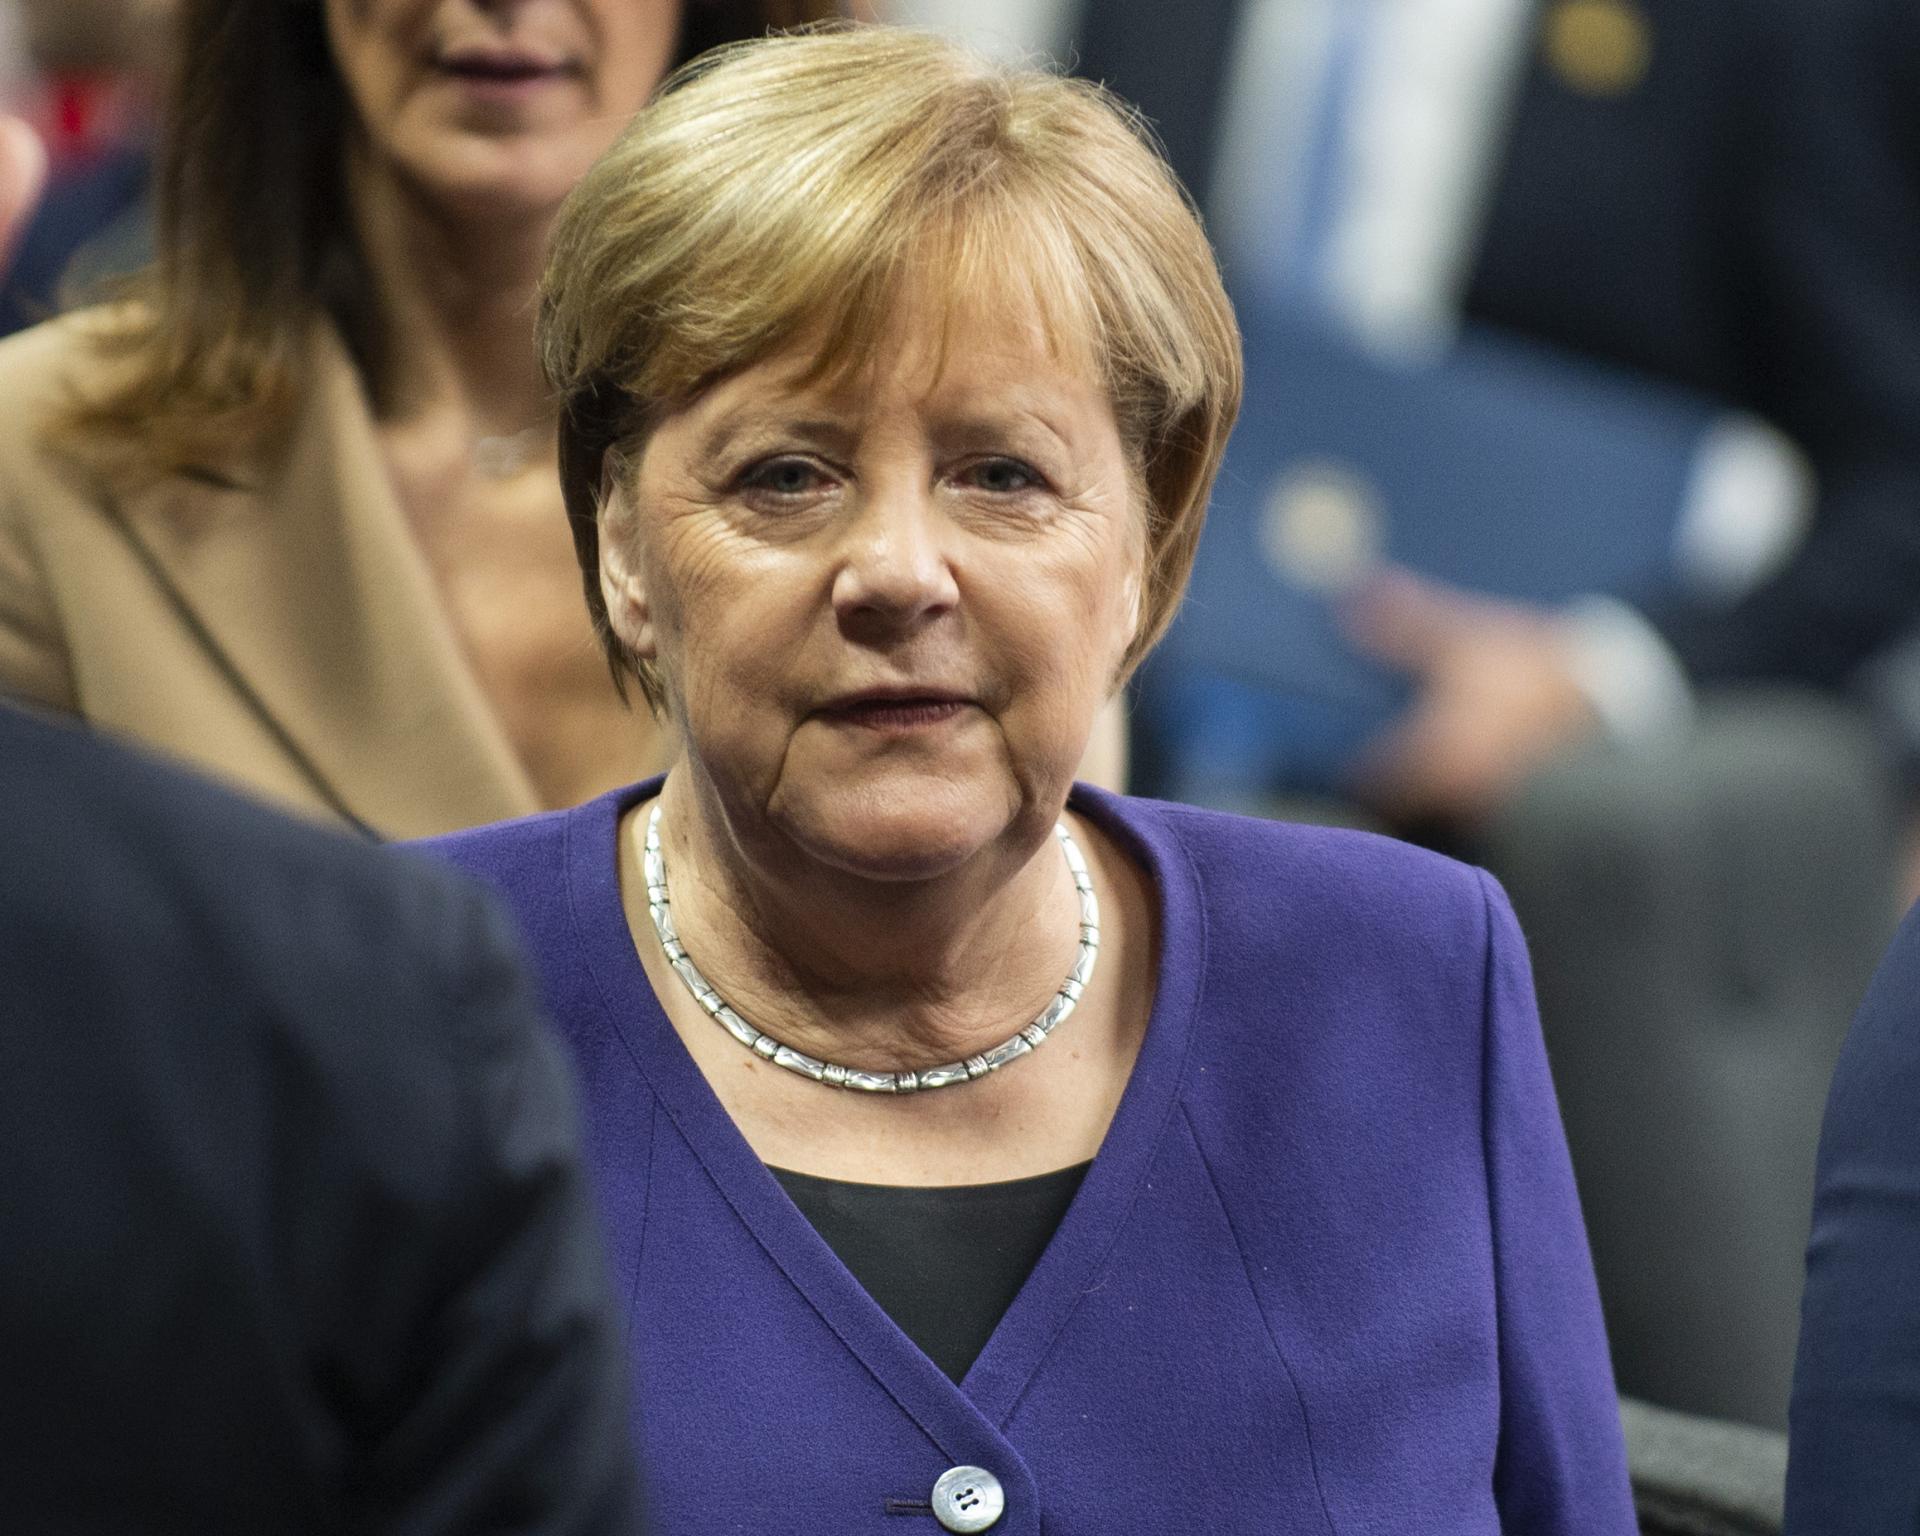 Navaľného smrť otriasla svetom. Merkelová viní štátnu moc Ruska, Poľsko žiada nezávislé vyšetrovanie